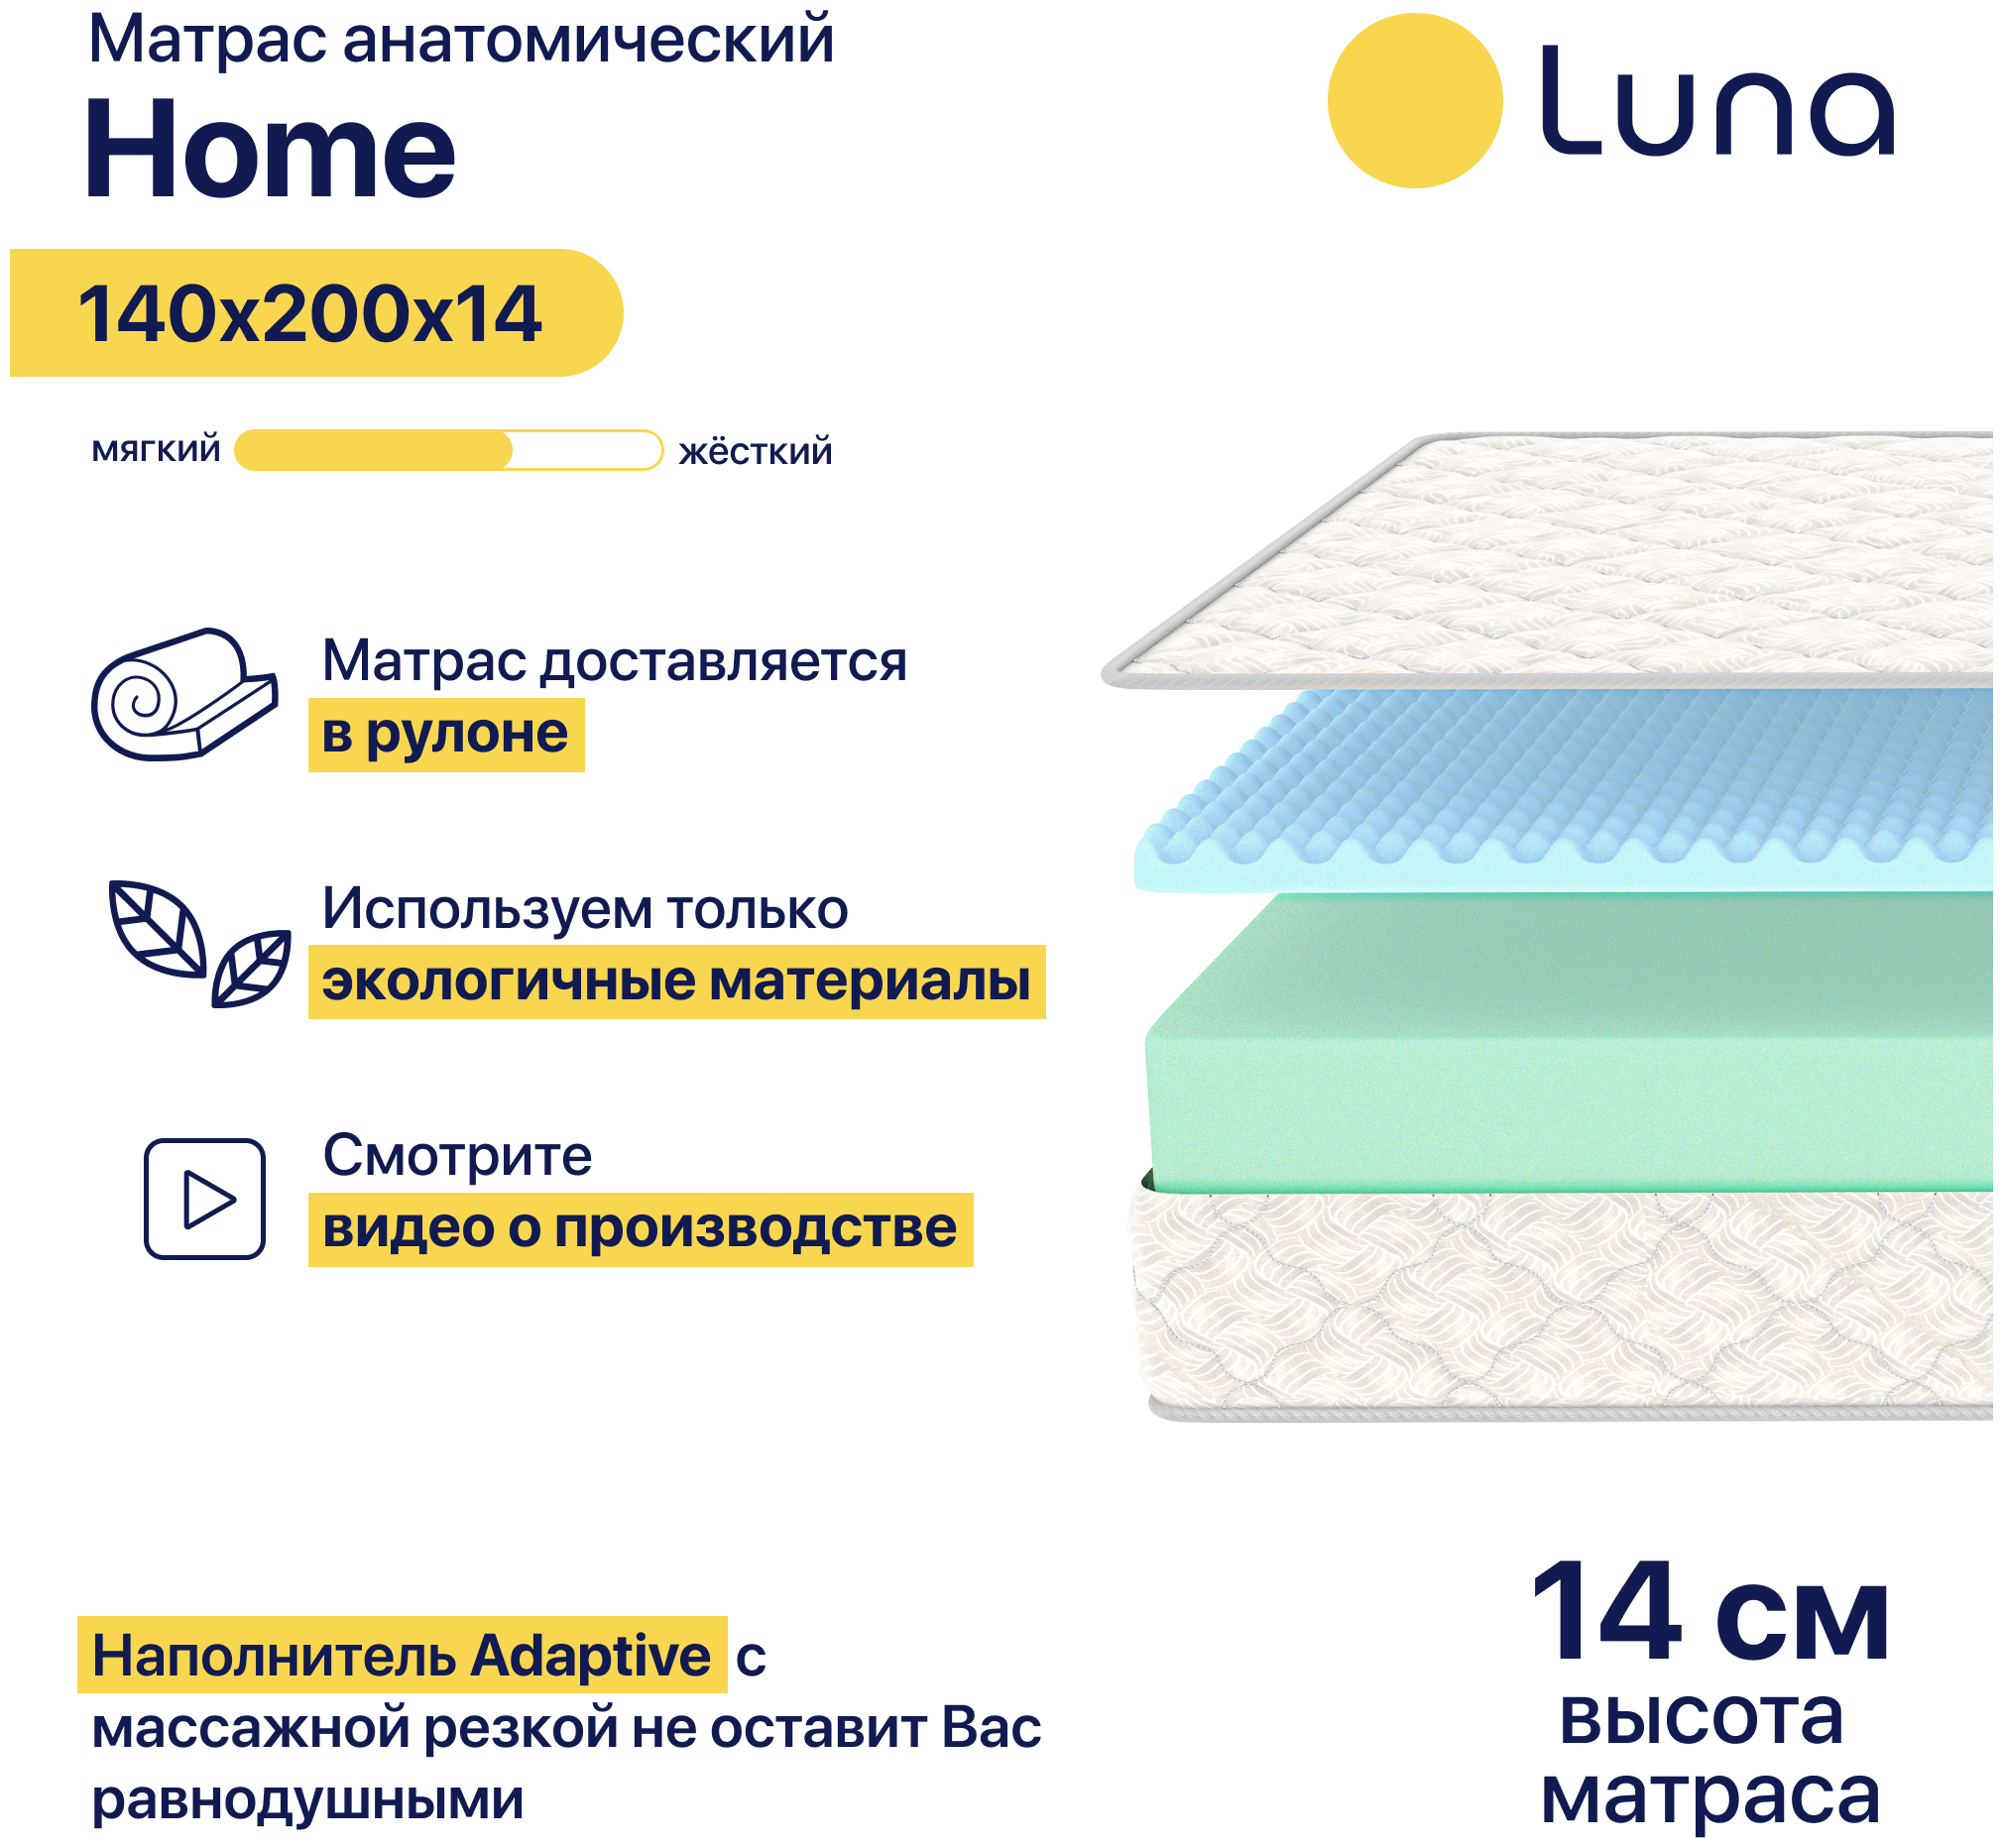 Матрас ортопедический Luna Home 140х200 см беспружинный, двухсторонний, гипоаллергенный, анатомический, высота 14 см